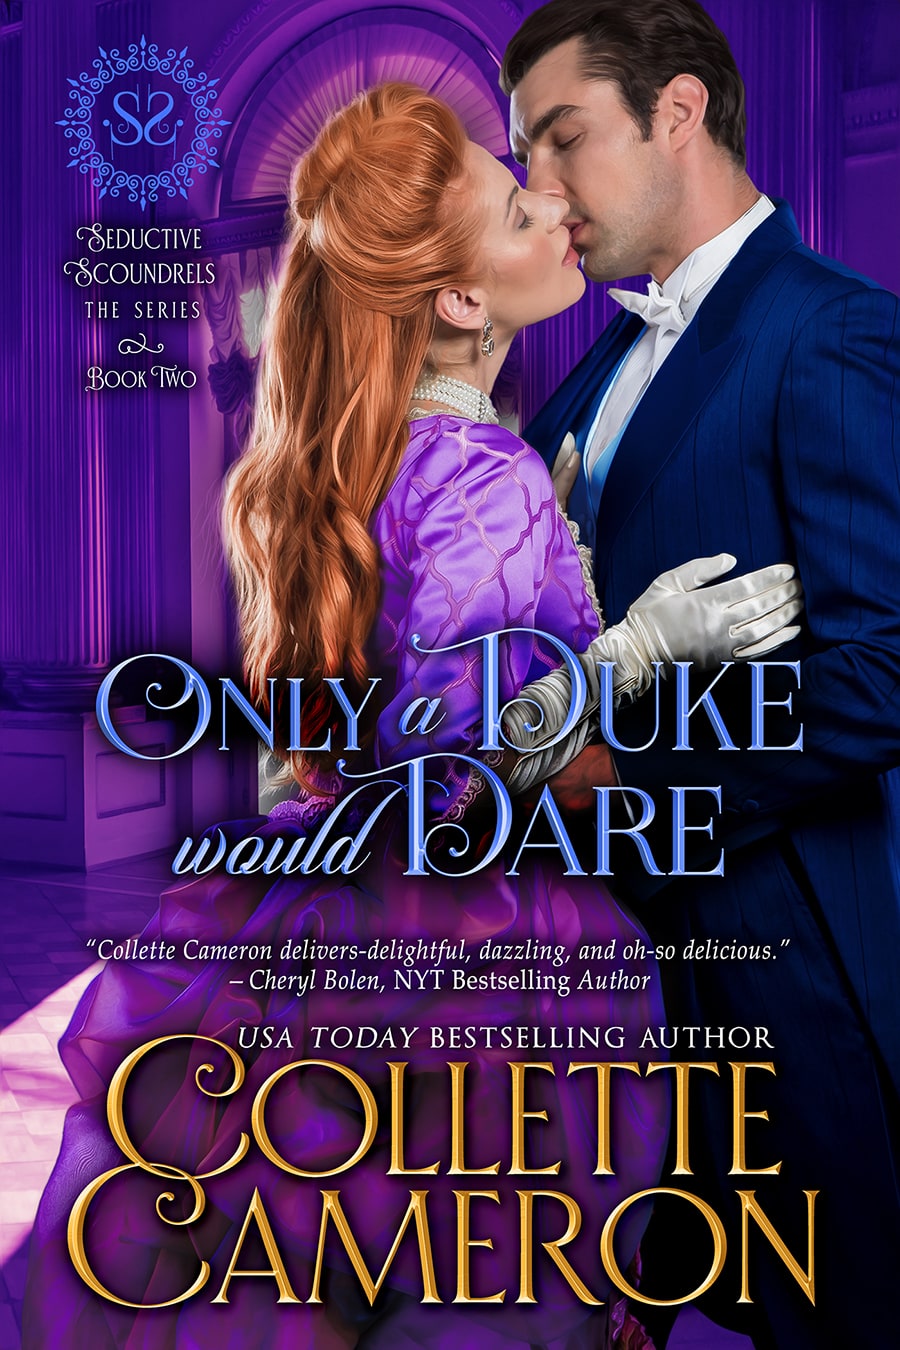 Collette's Historical Romances 36